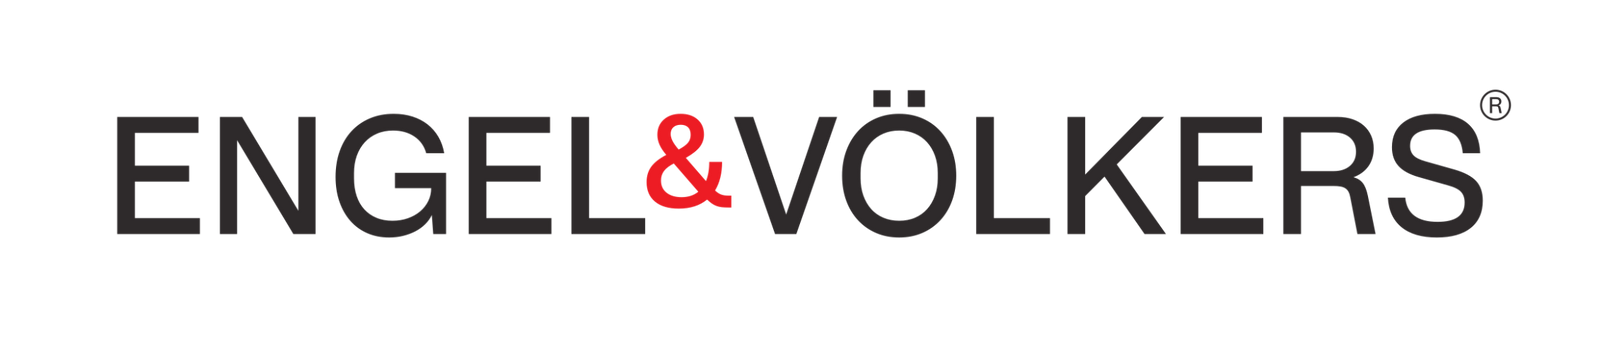 Engel & Volkers Vancouver Logo